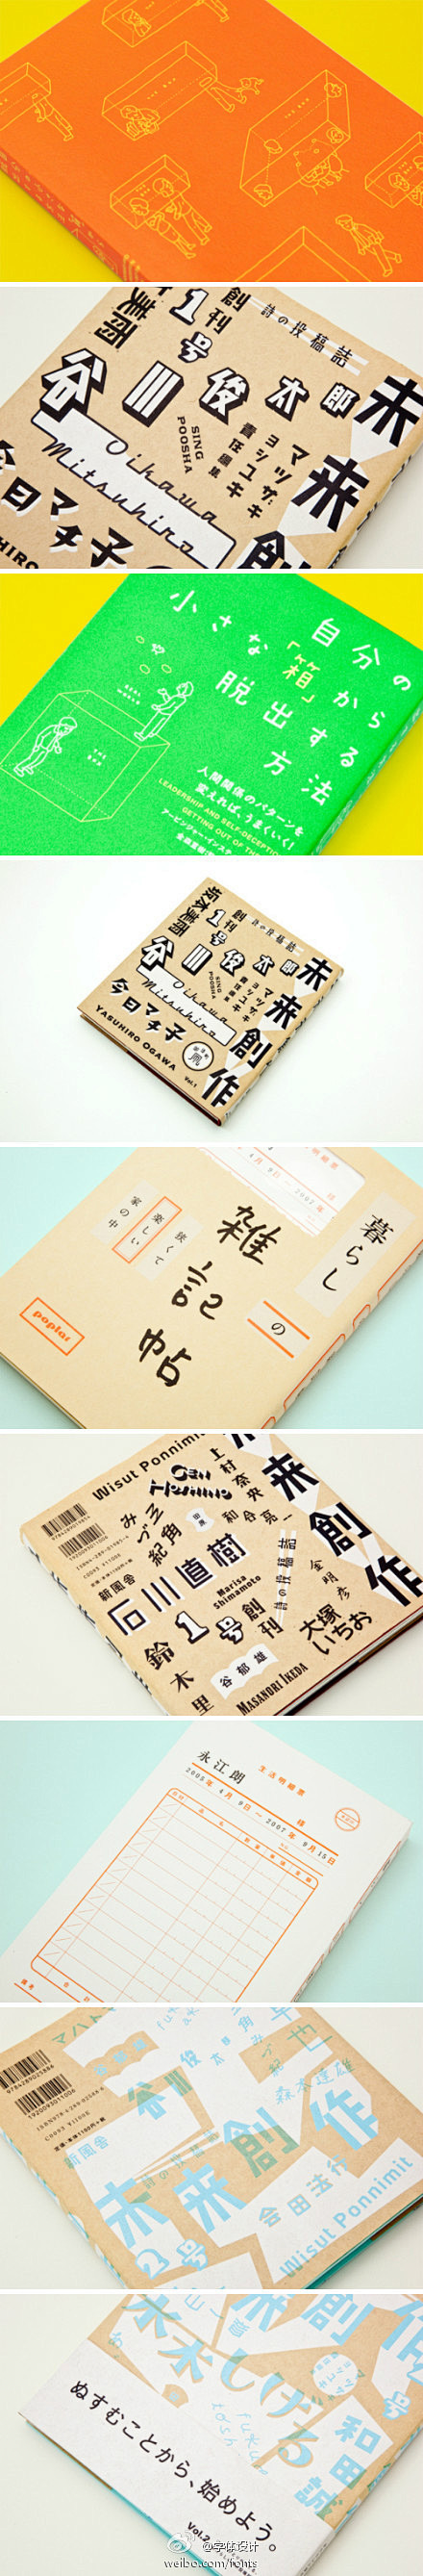 日本设计师寄藤文平书籍装帧作品欣赏